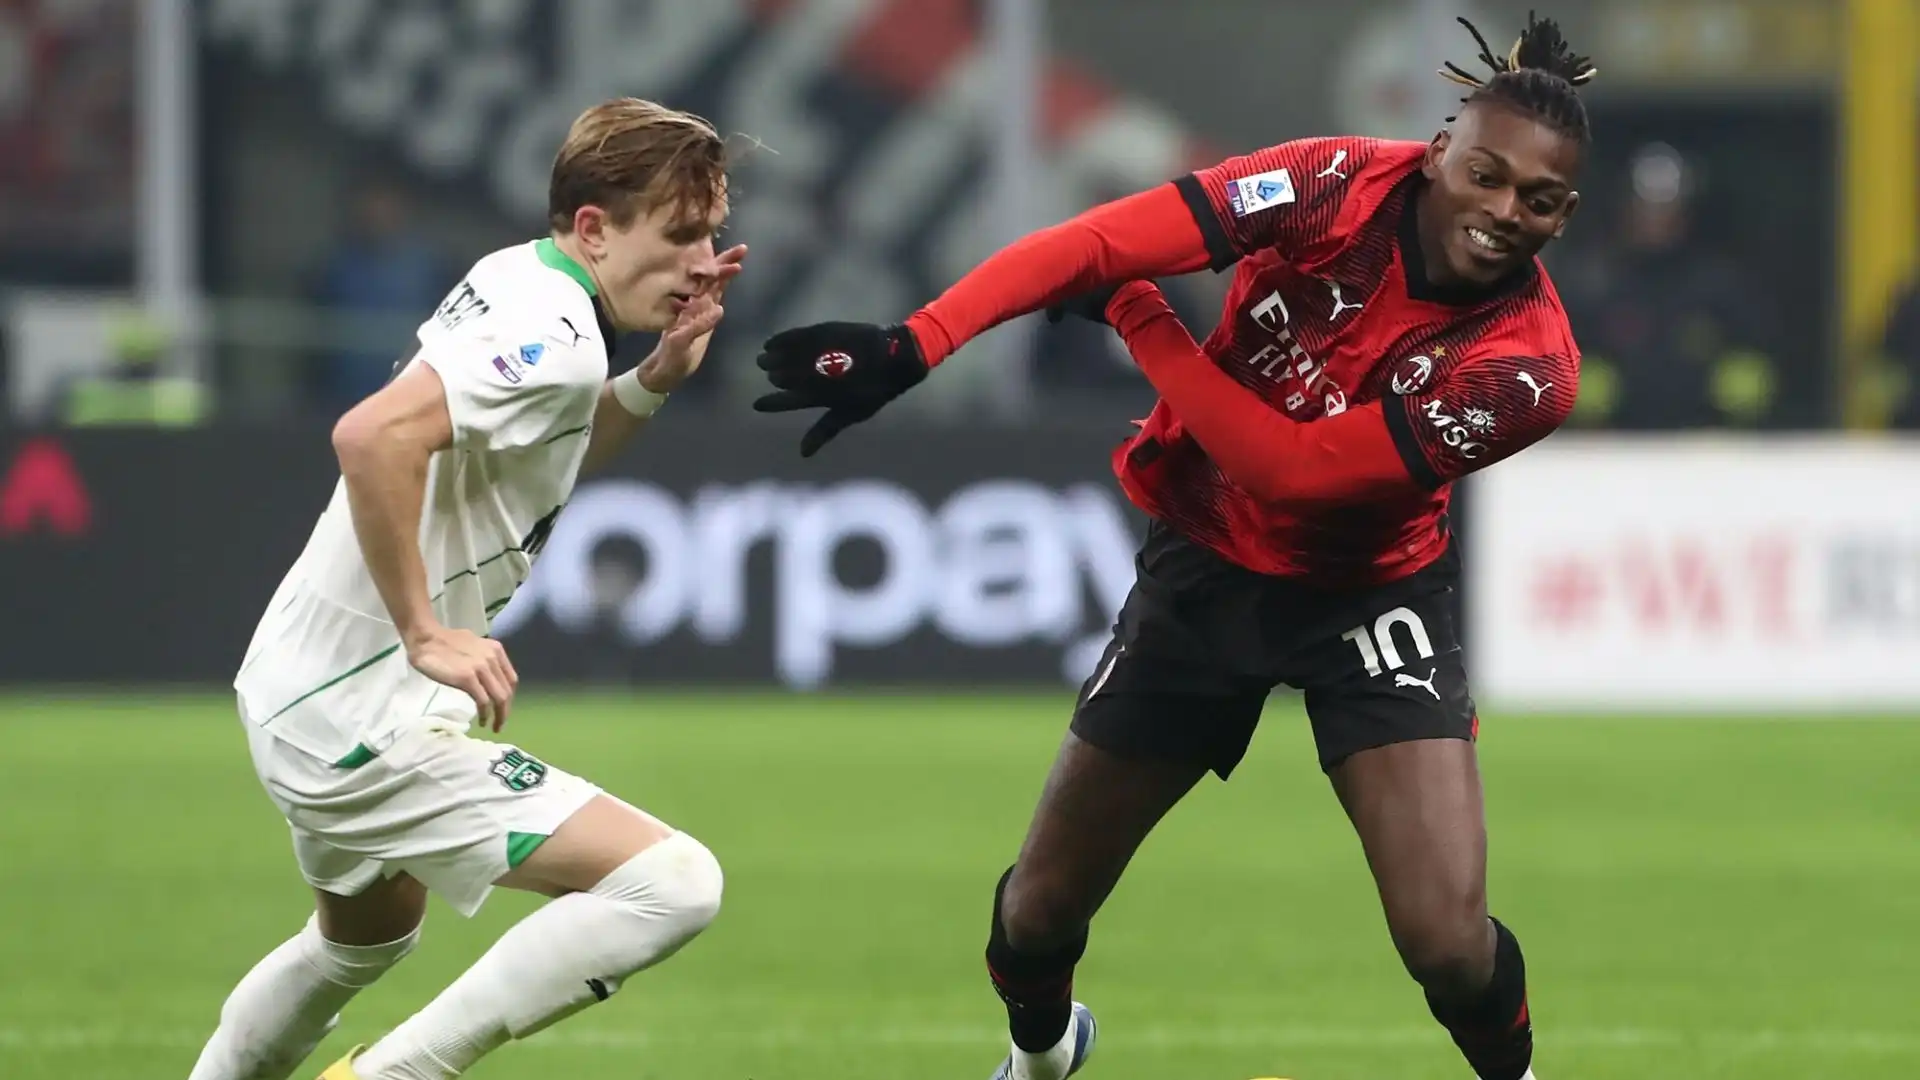 L'ex fuoriclasse del Lille sta benissimo a Milano: "Tutti vorrebbero giocare qui" ha detto recentemente